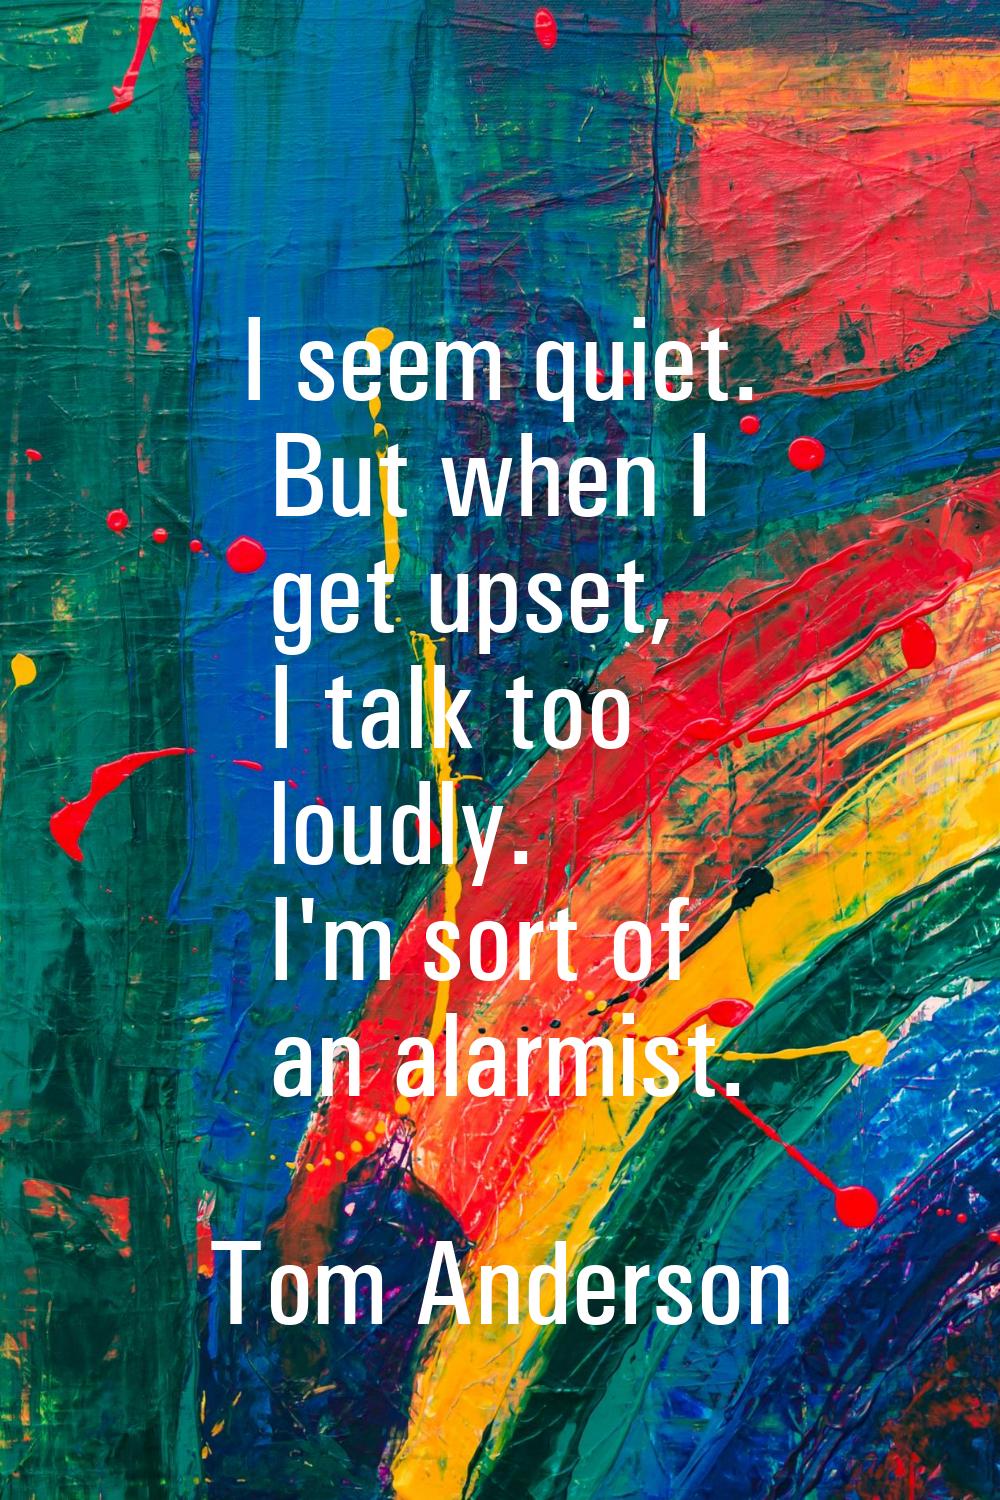 I seem quiet. But when I get upset, I talk too loudly. I'm sort of an alarmist.